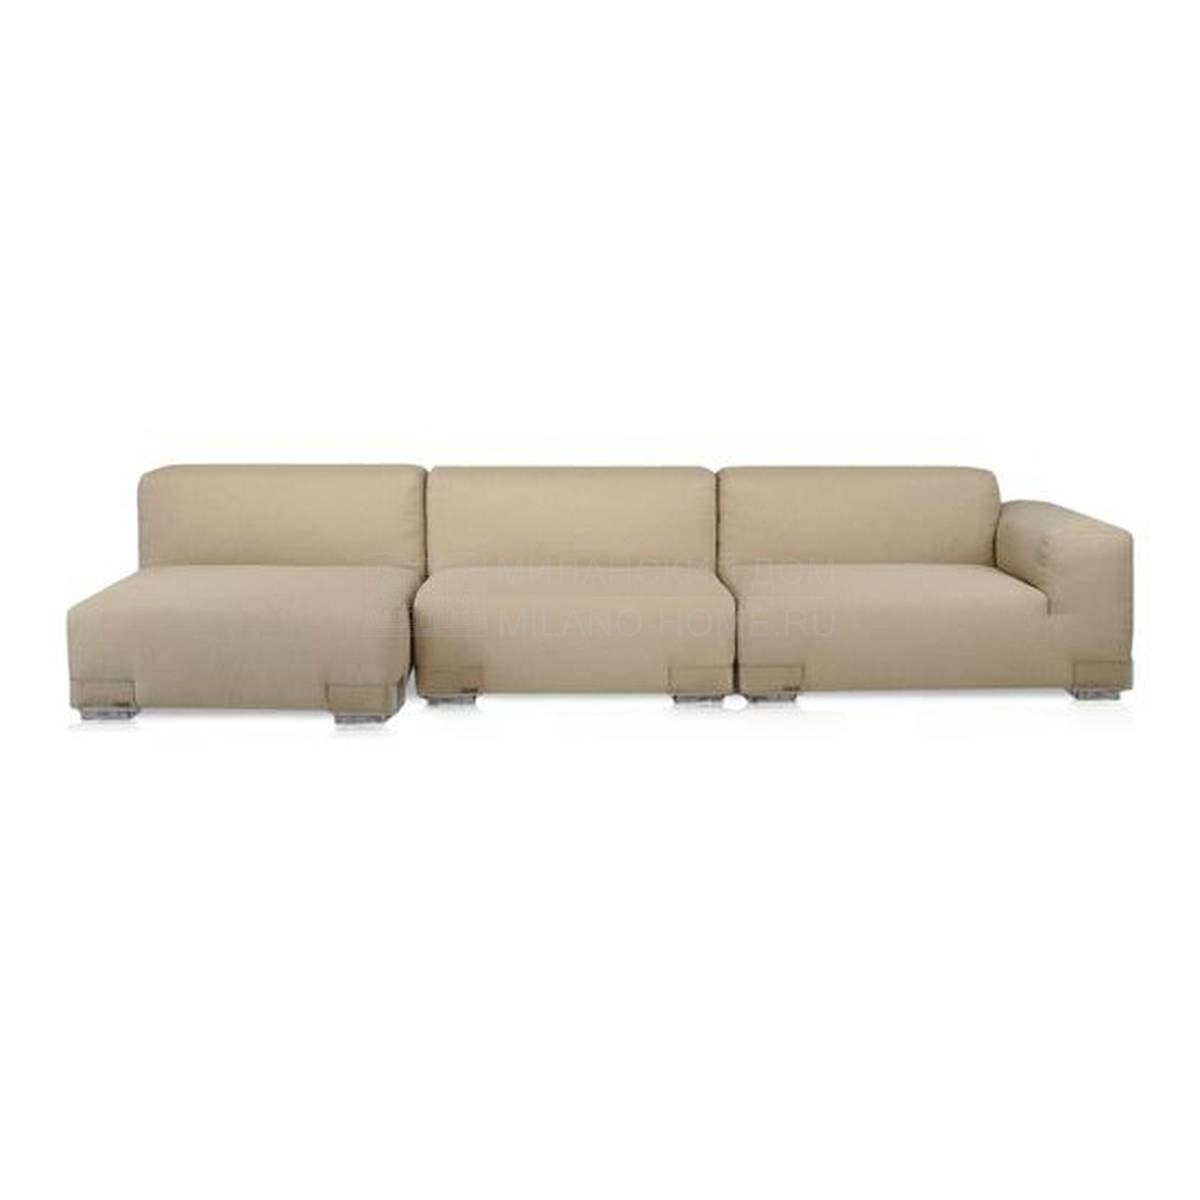 Угловой диван Plastics Duo из Италии фабрики KARTELL